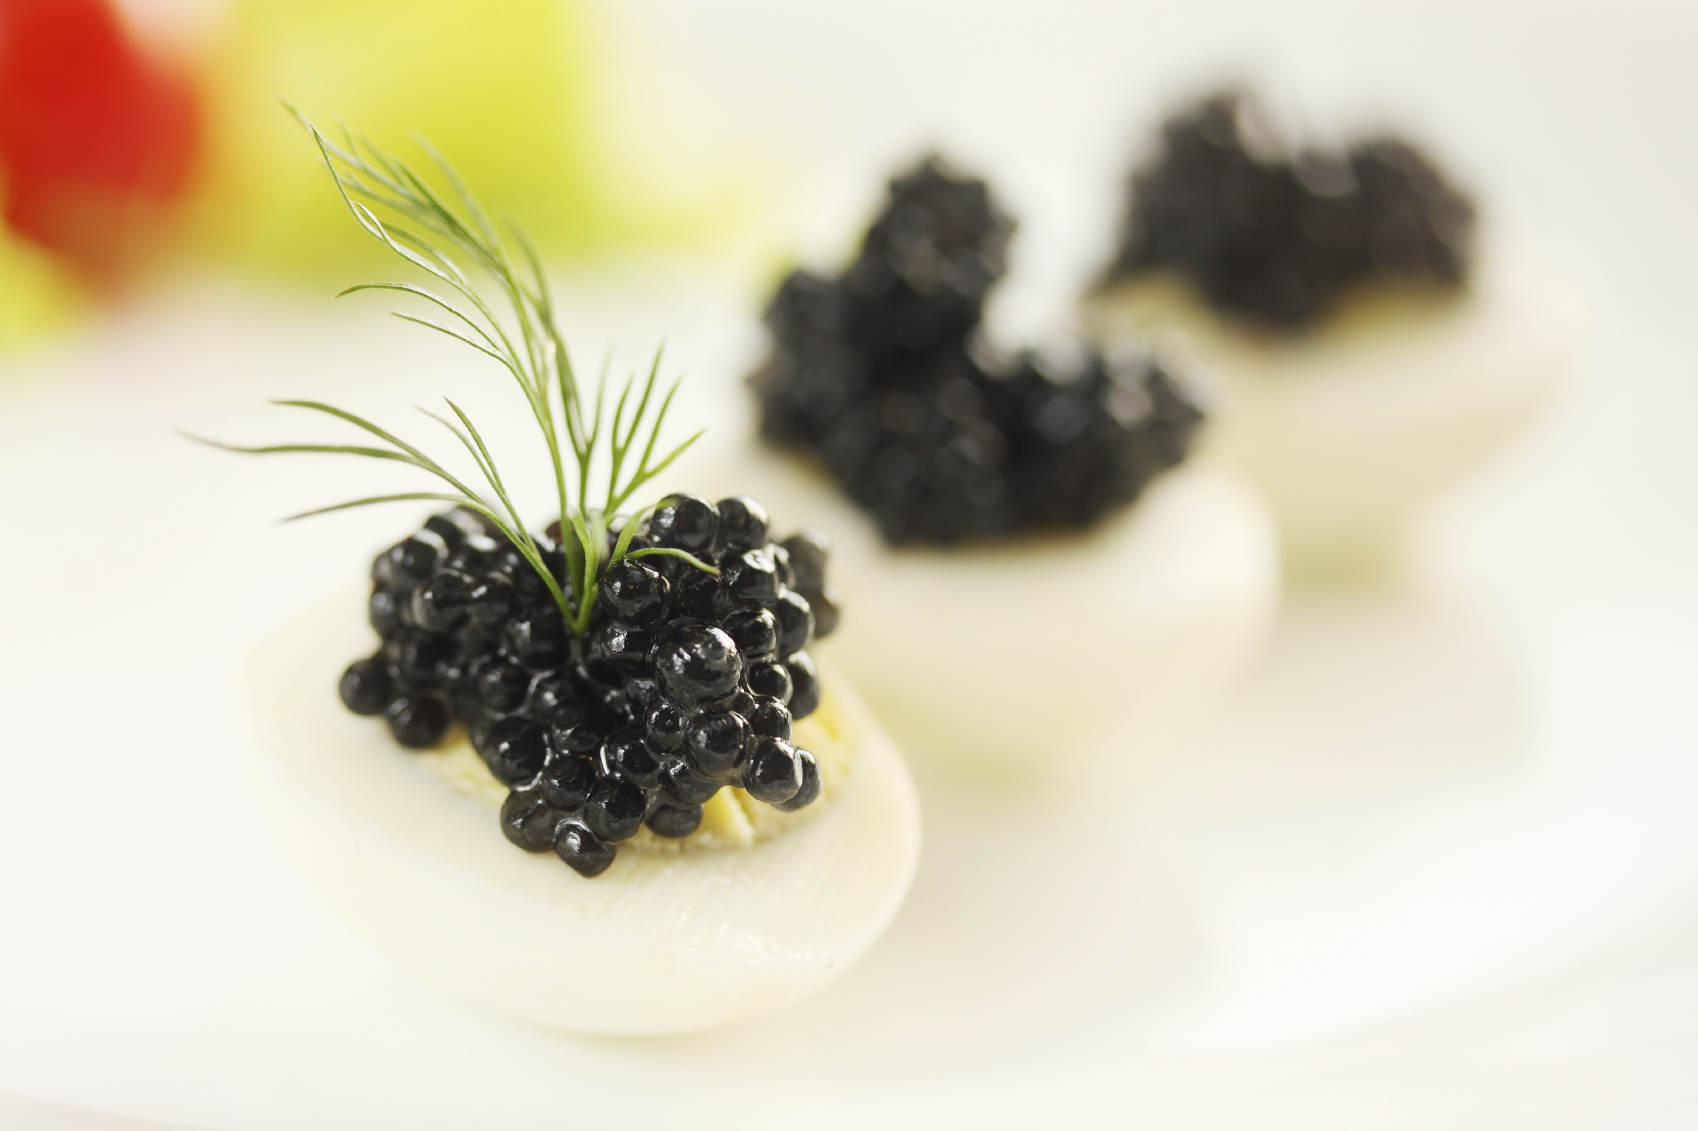 Canapés de huevo de codorniz y caviar